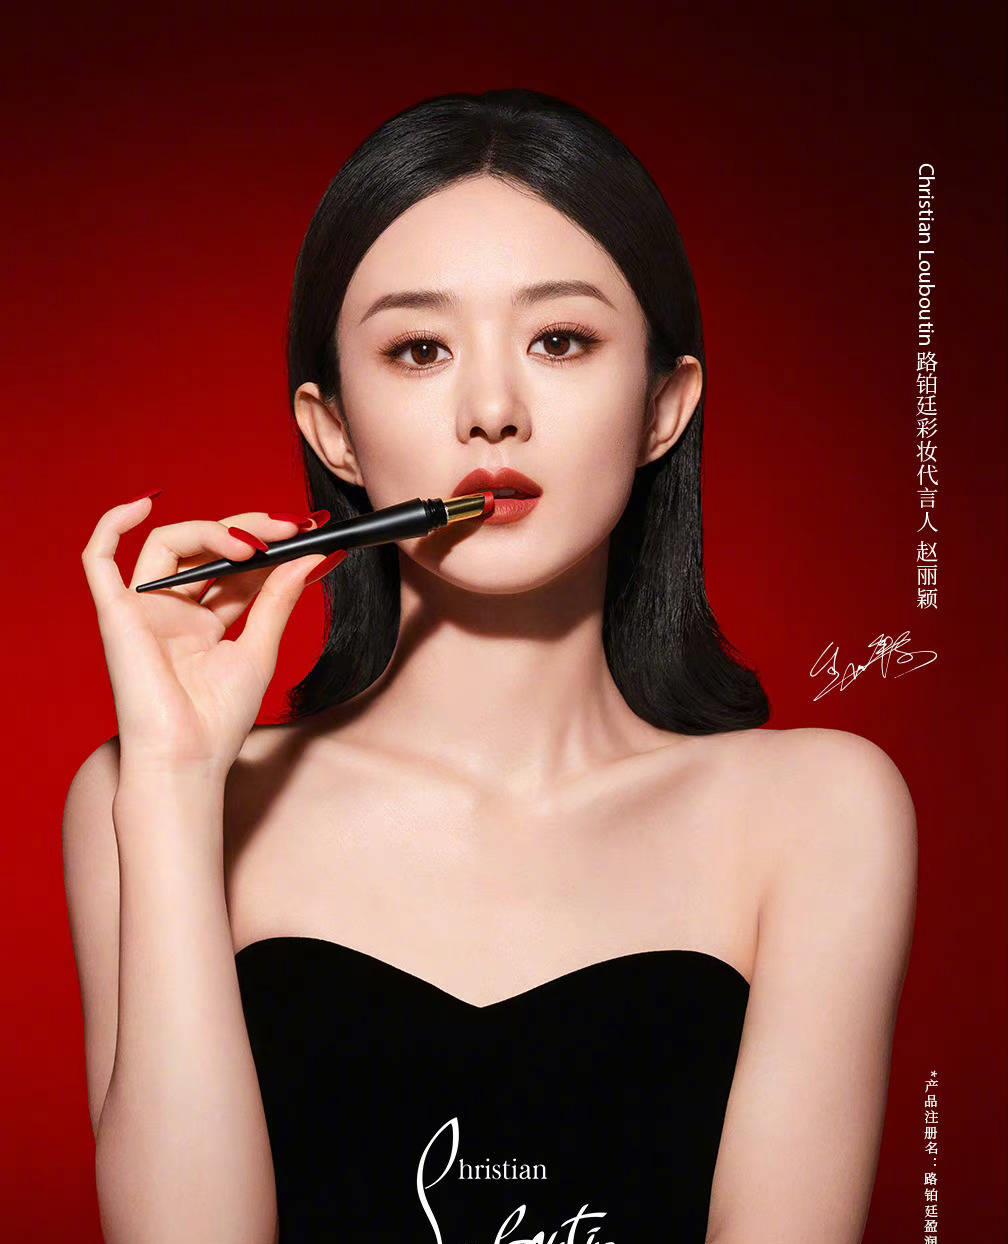 拍摄广告时,赵丽颖身穿黑色筒装,单手将口红涂在火红的嘴唇上,露出